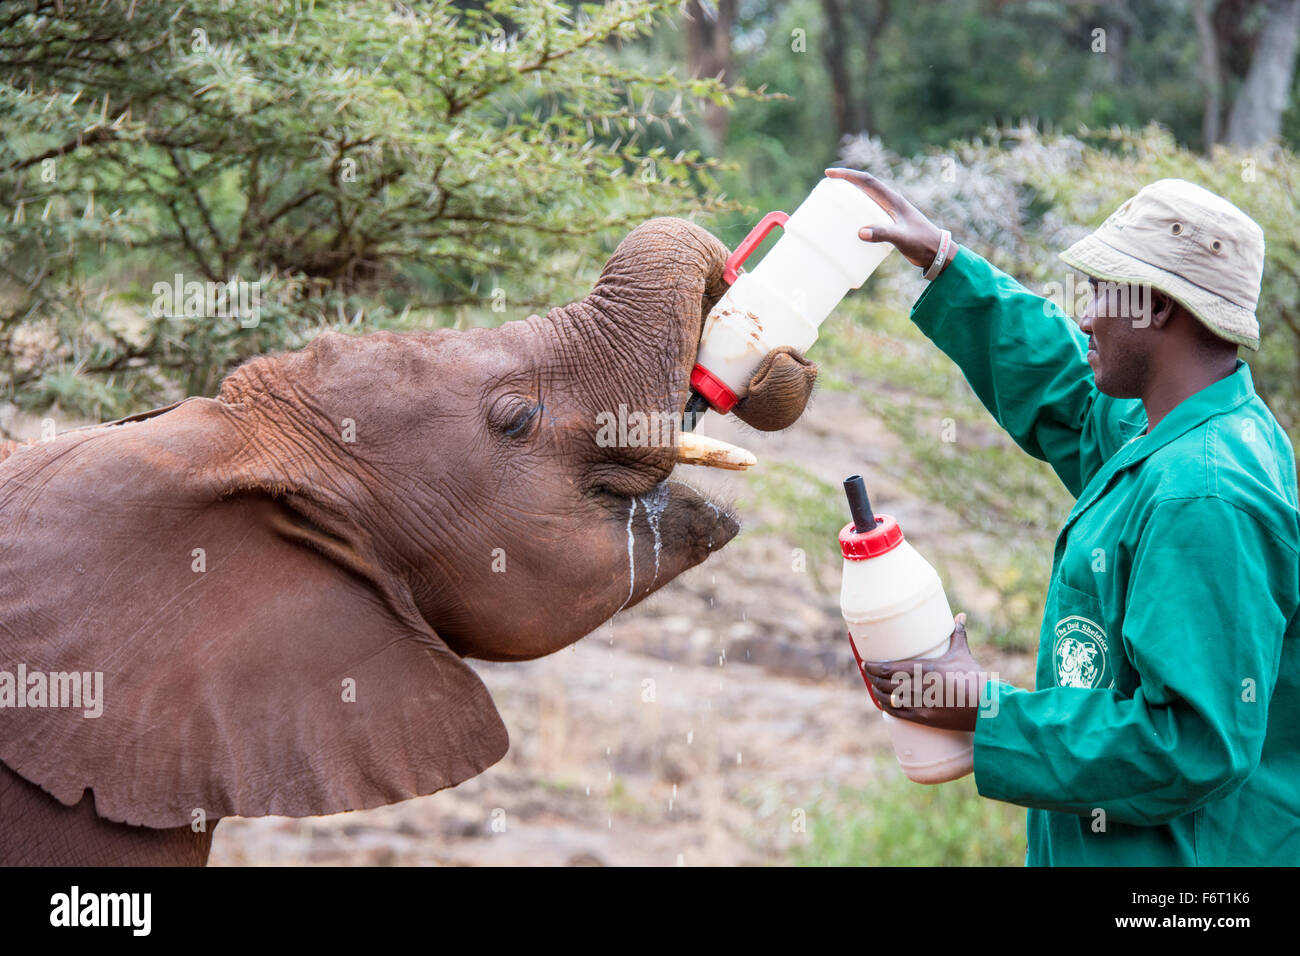 Portero para alimentar un hambre de huérfano en la pantorrilla, el Elefante Africano Loxodonta africana, el Orfanato de Elefantes Sheldrick, Nairobi, Kenya, Africa. Foto de stock